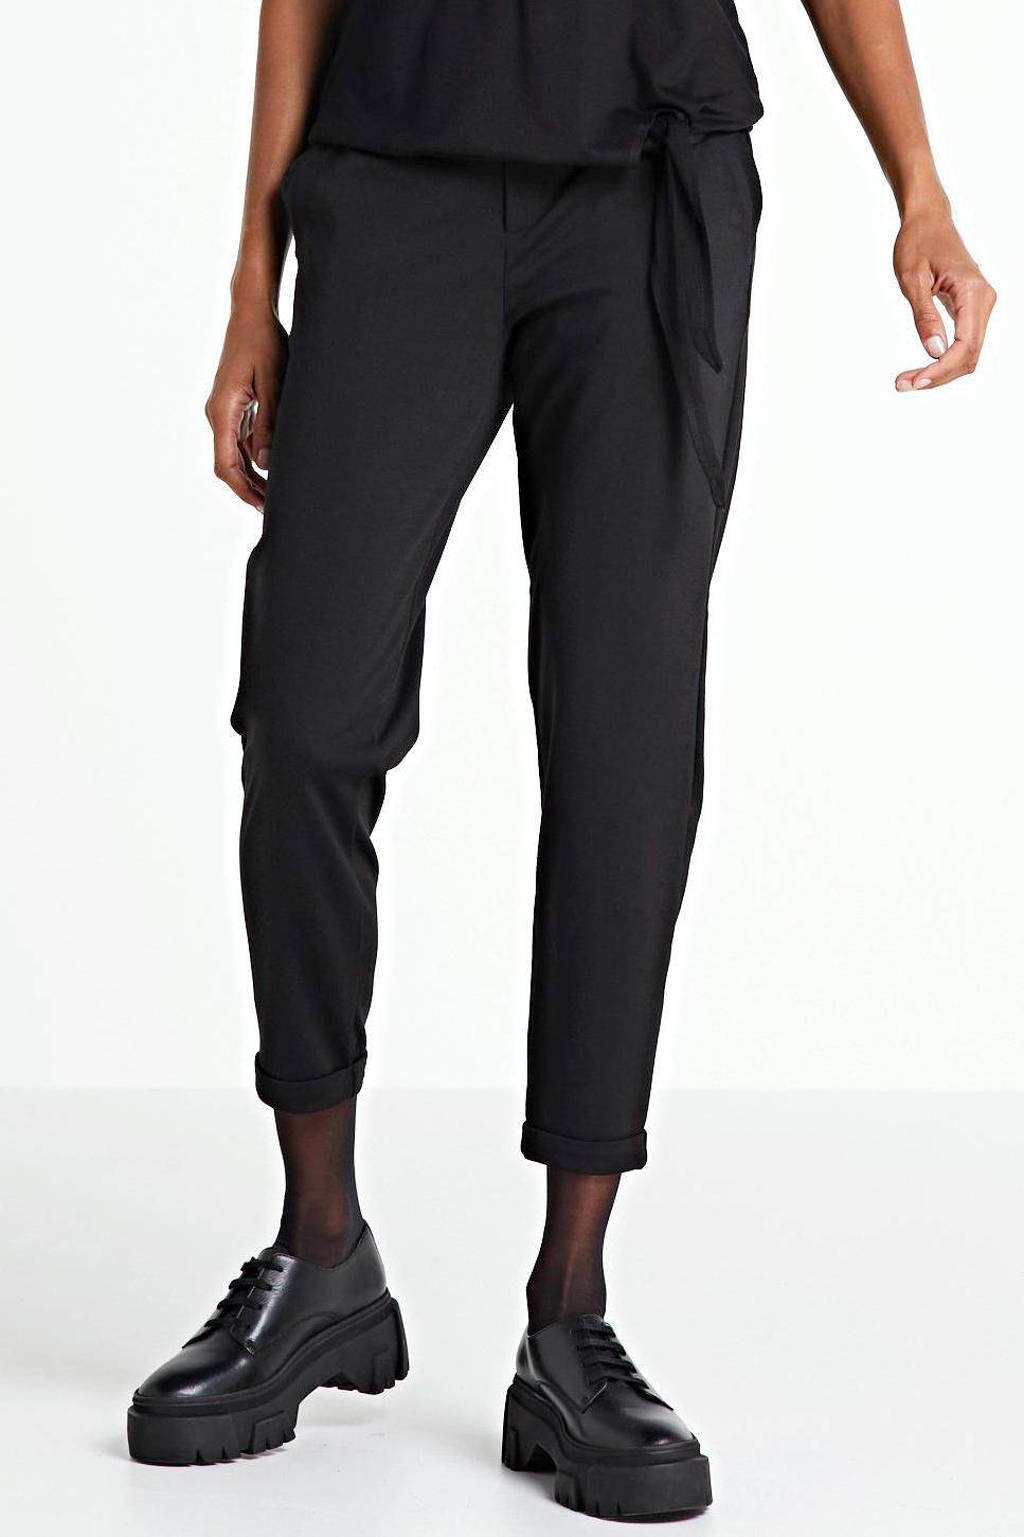 Zwarte dames FREEQUENT slim fit broek van polyester met regular waist